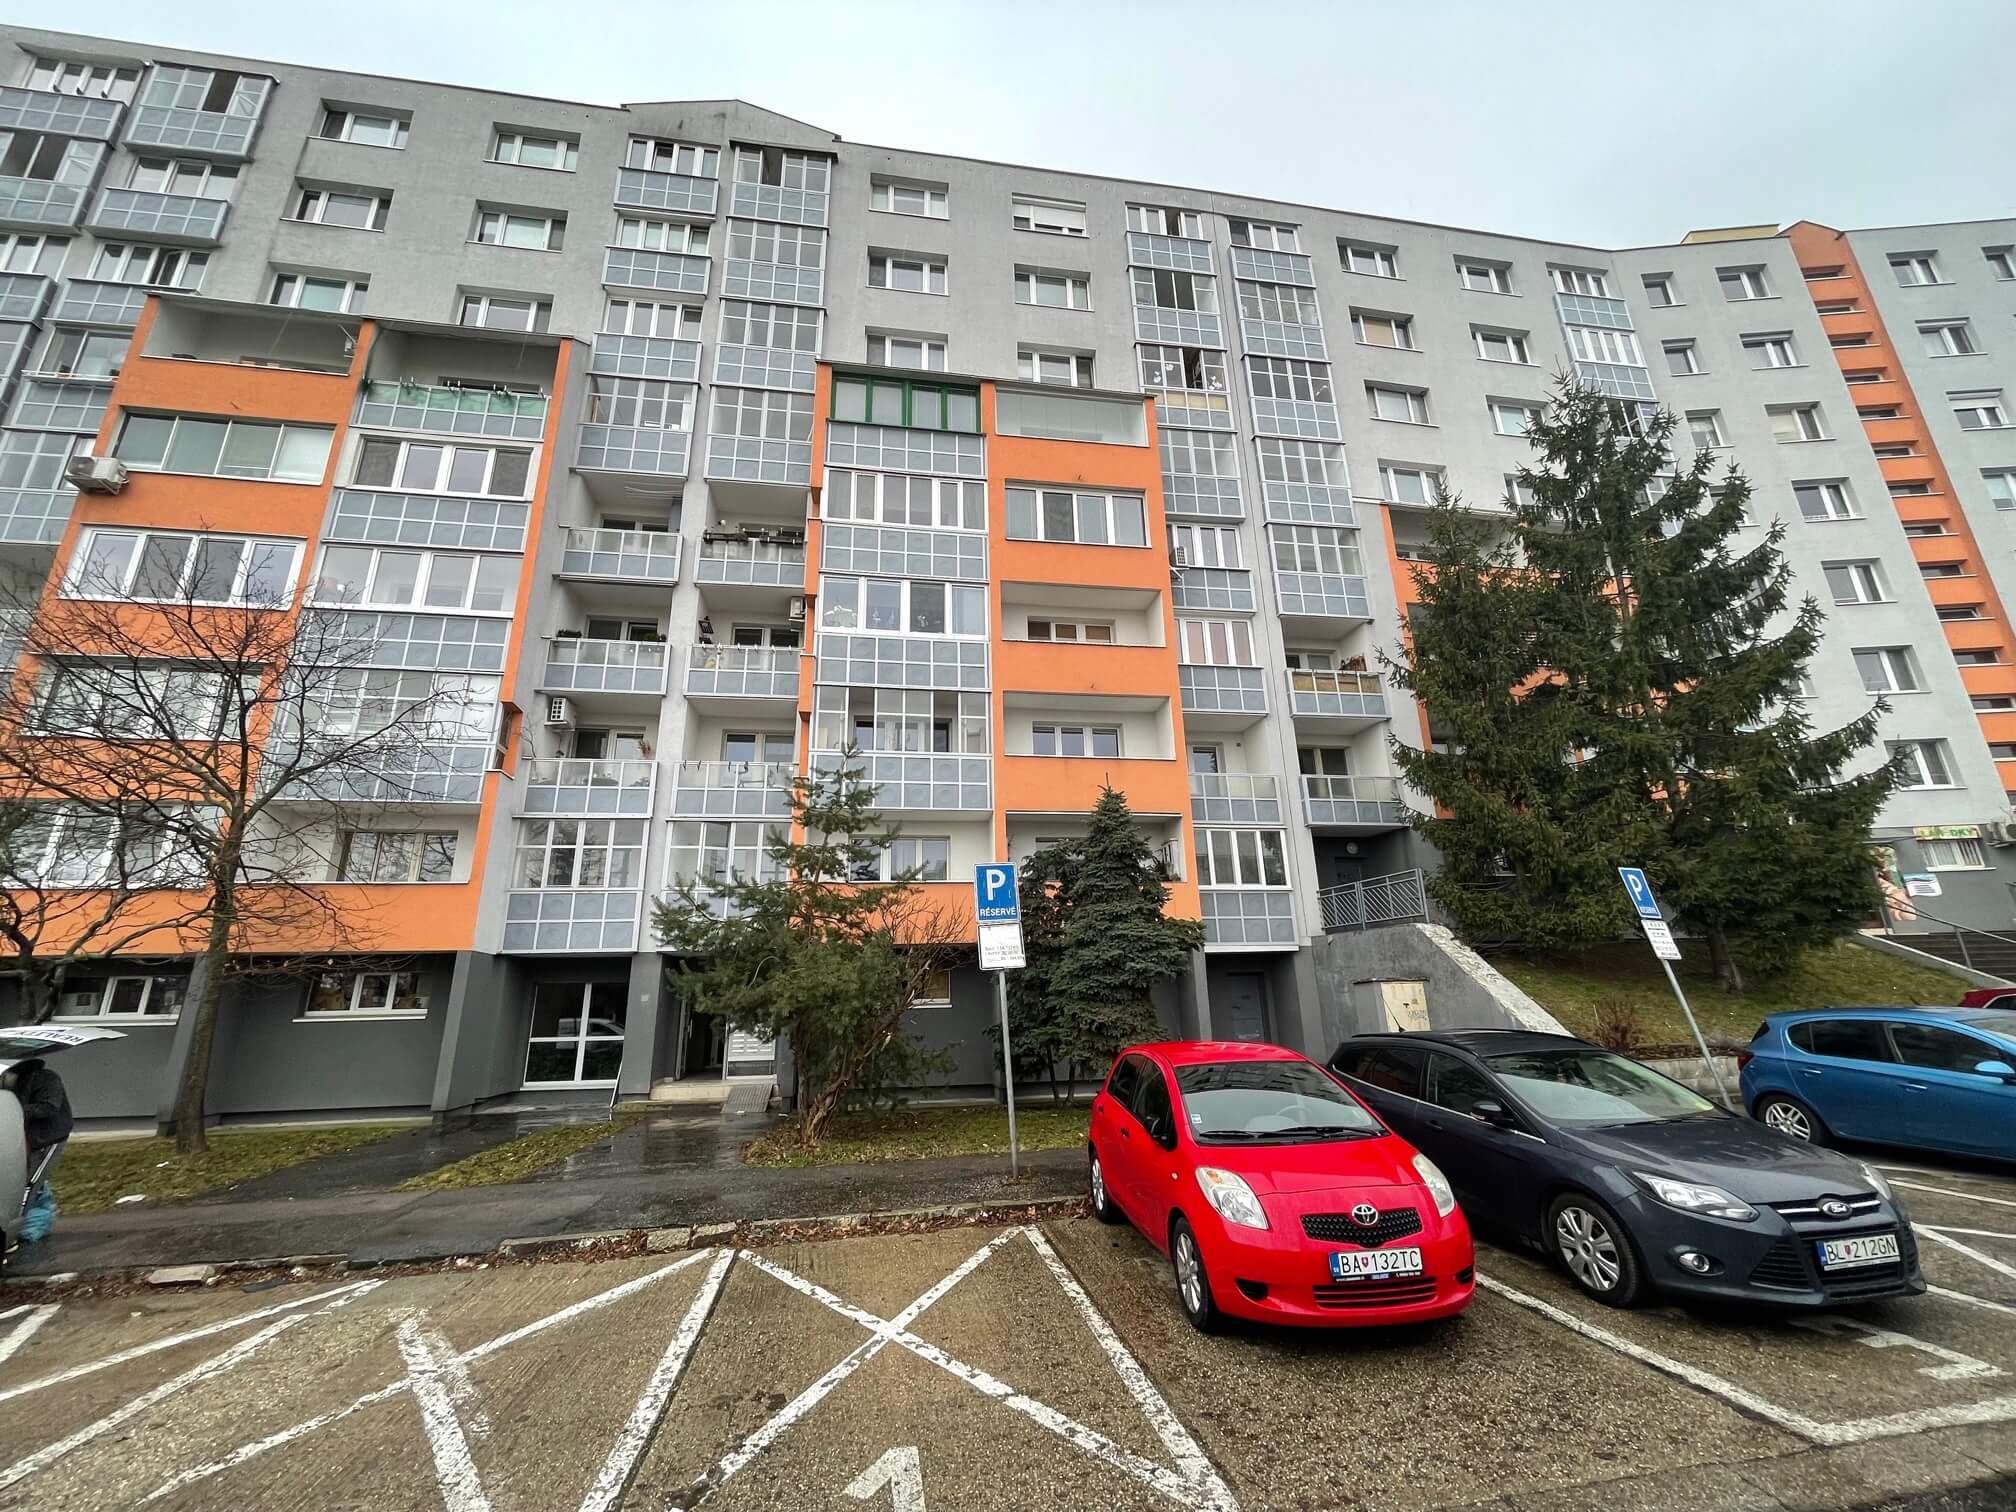 Prenajaté: Izby na prenájom v 3 izbovom byte, Karlovka, Kolísková 6 v Bratislave, 300€ izba, izba má 20m2 s  balkónom,-5